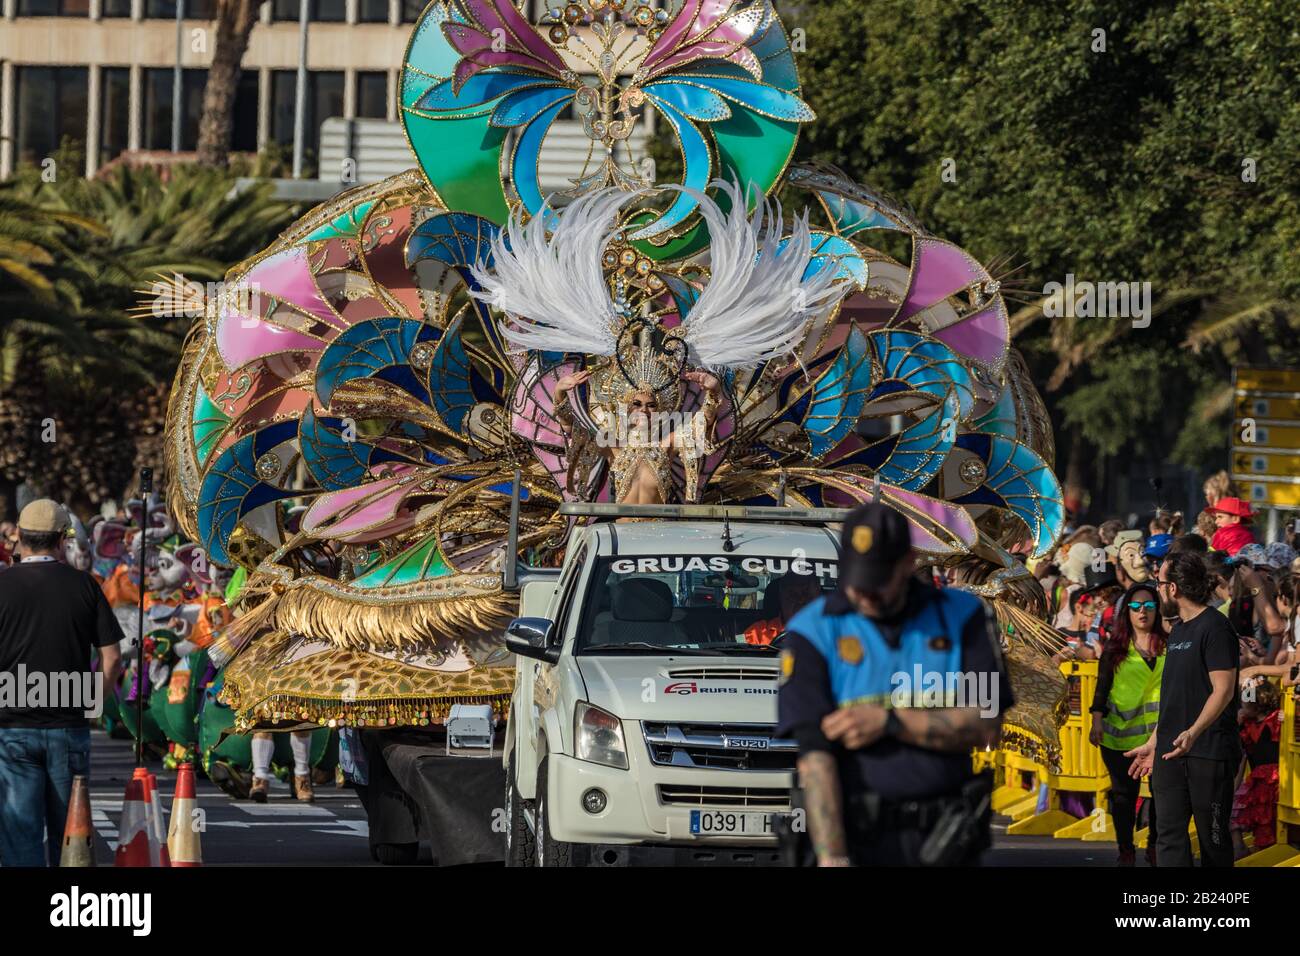 Ramen wassen Gemarkeerd zanger Carnaval de santa cruz de tenerife hi-res stock photography and images -  Page 2 - Alamy